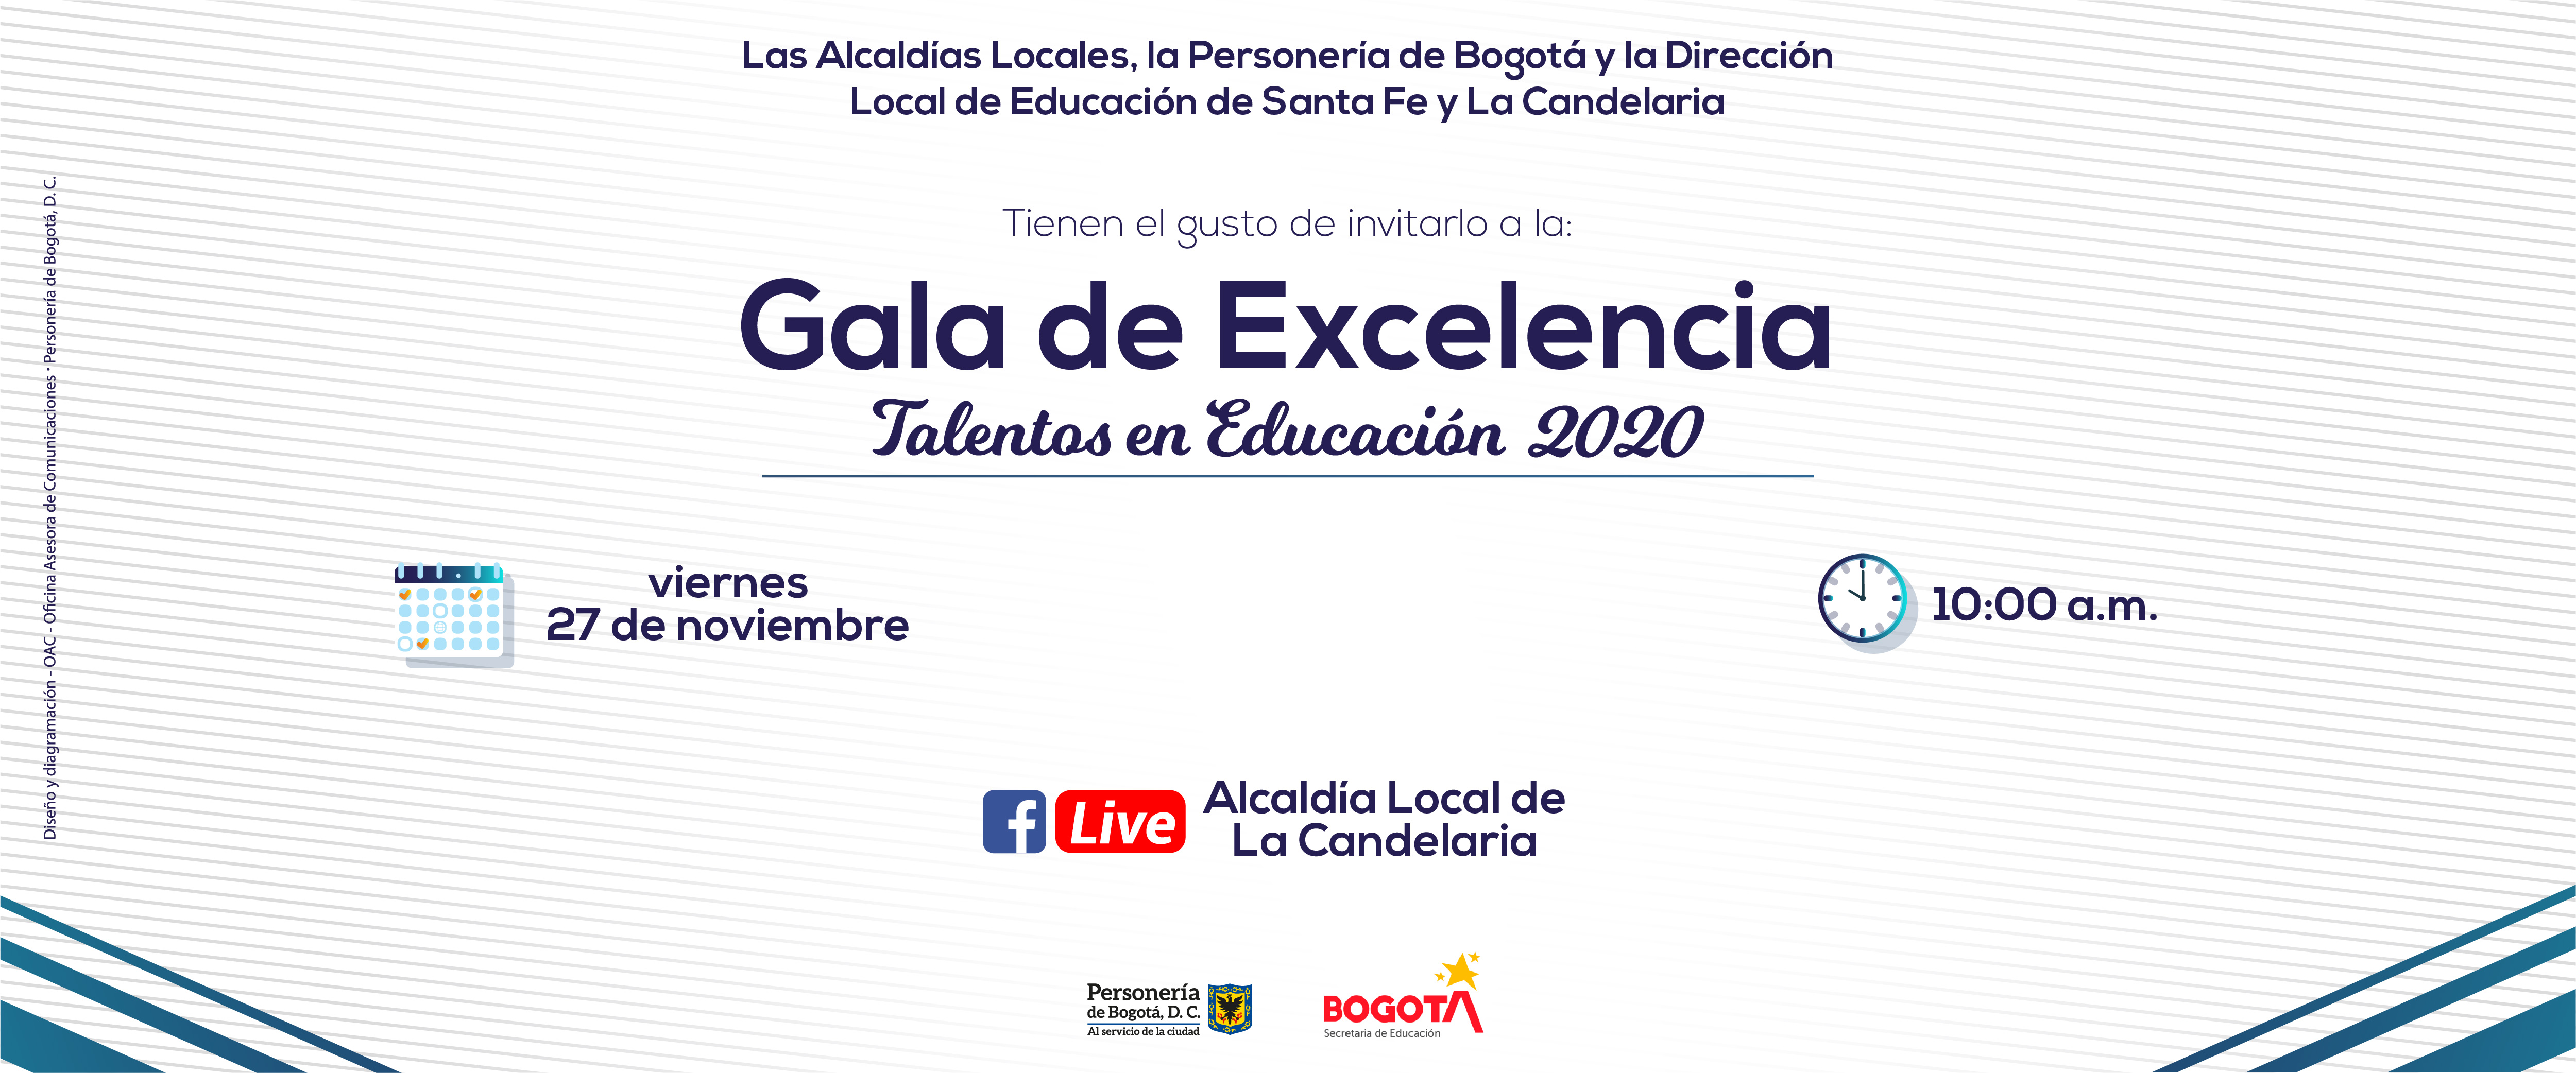 invitacin_gala_de_excelencia_banner_web.jpg - 1.28 MB